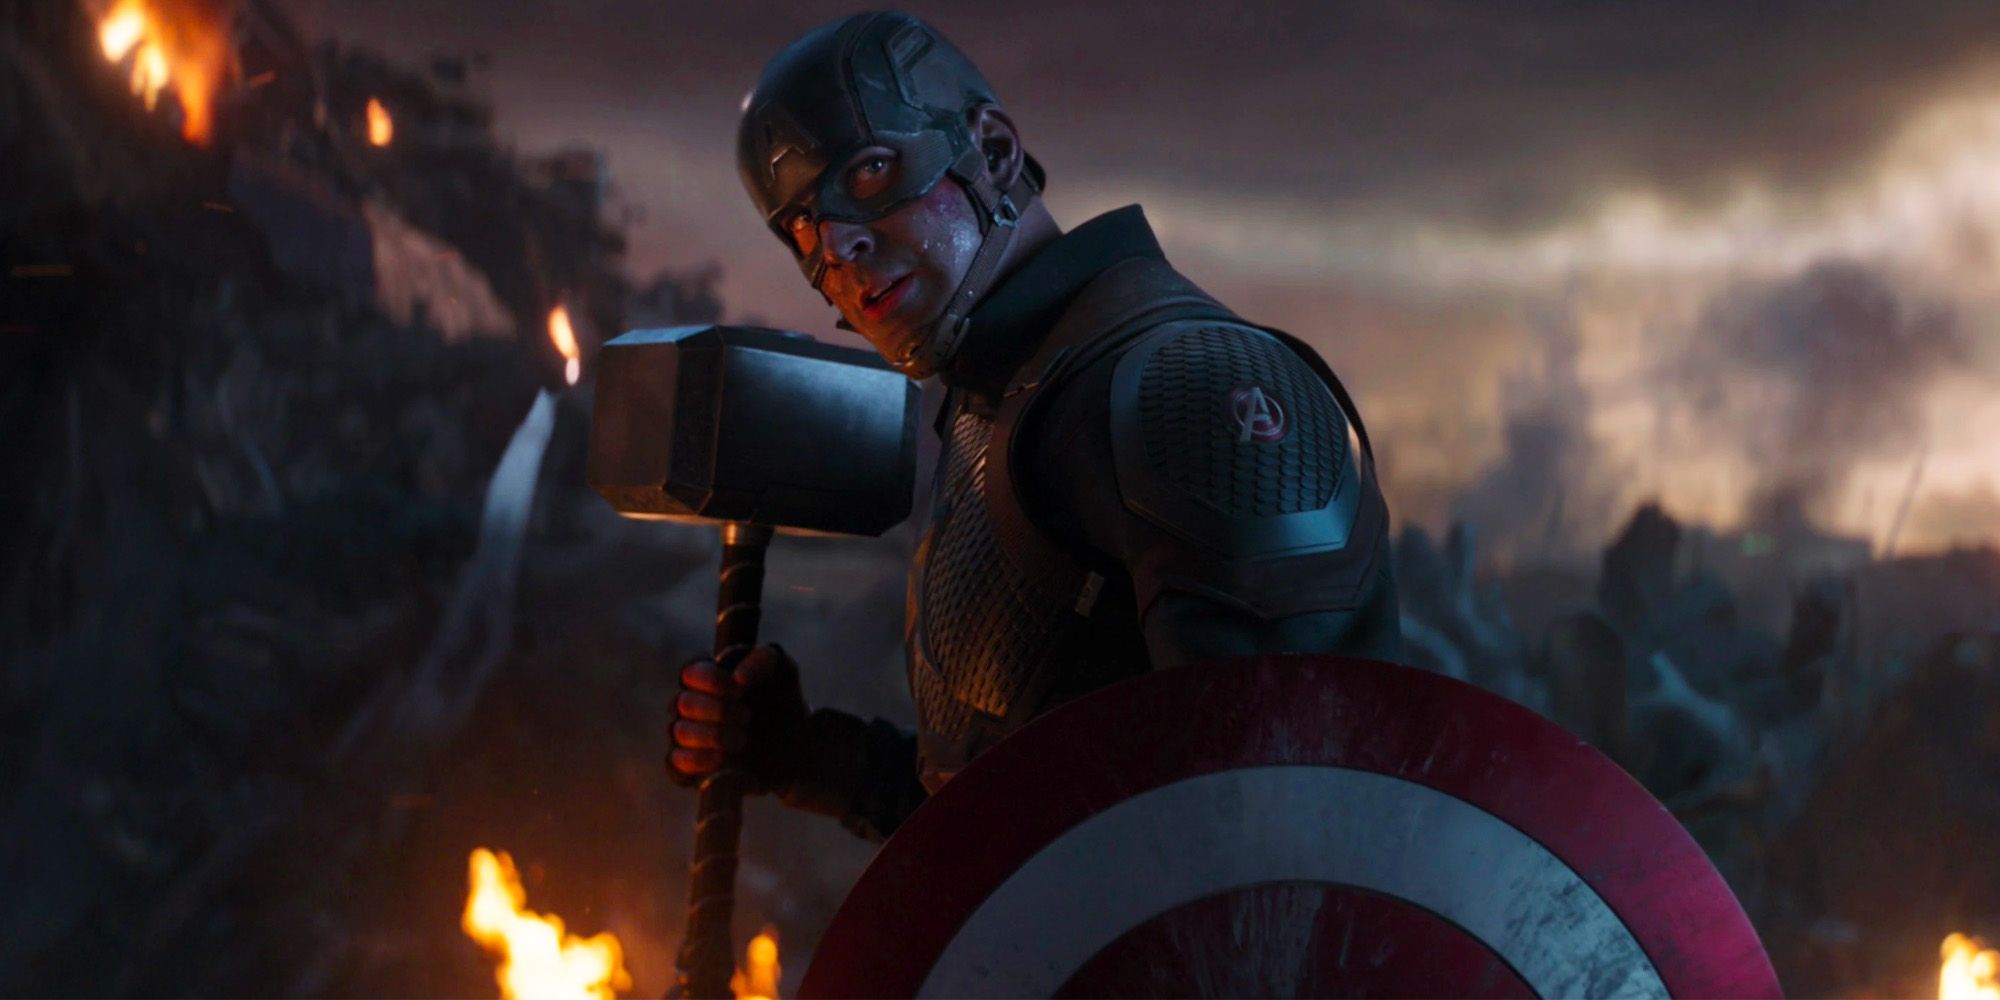 Chris Evans as Captain America in Avengers Endgame with Mjolnir